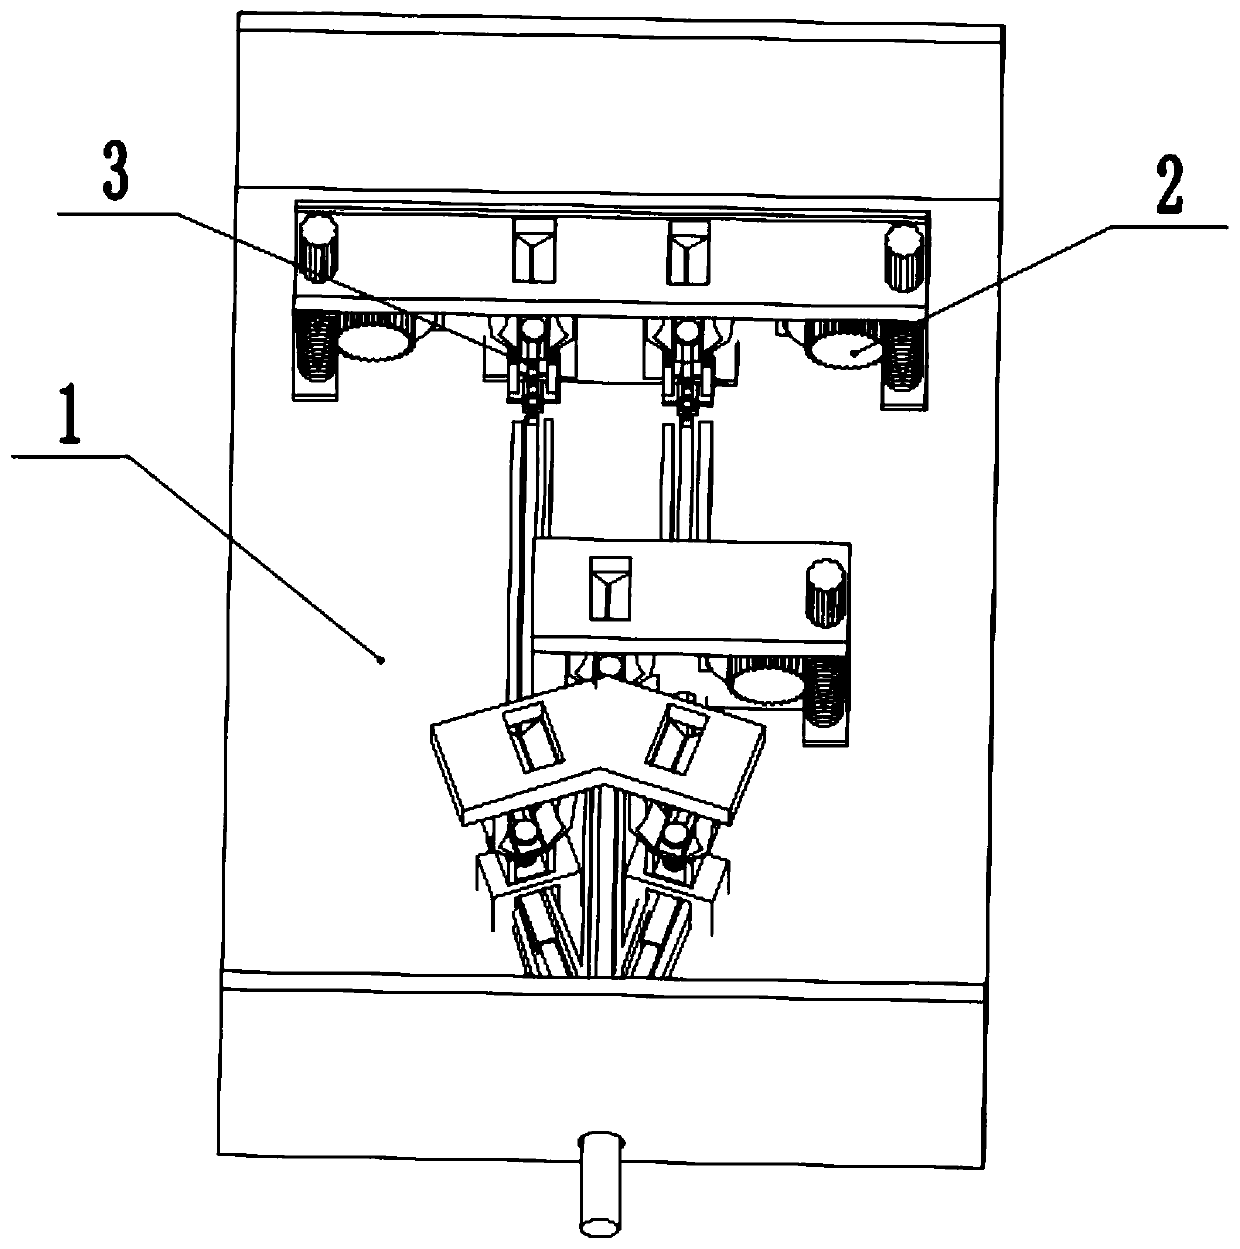 Manual locking anti-electric shock socket